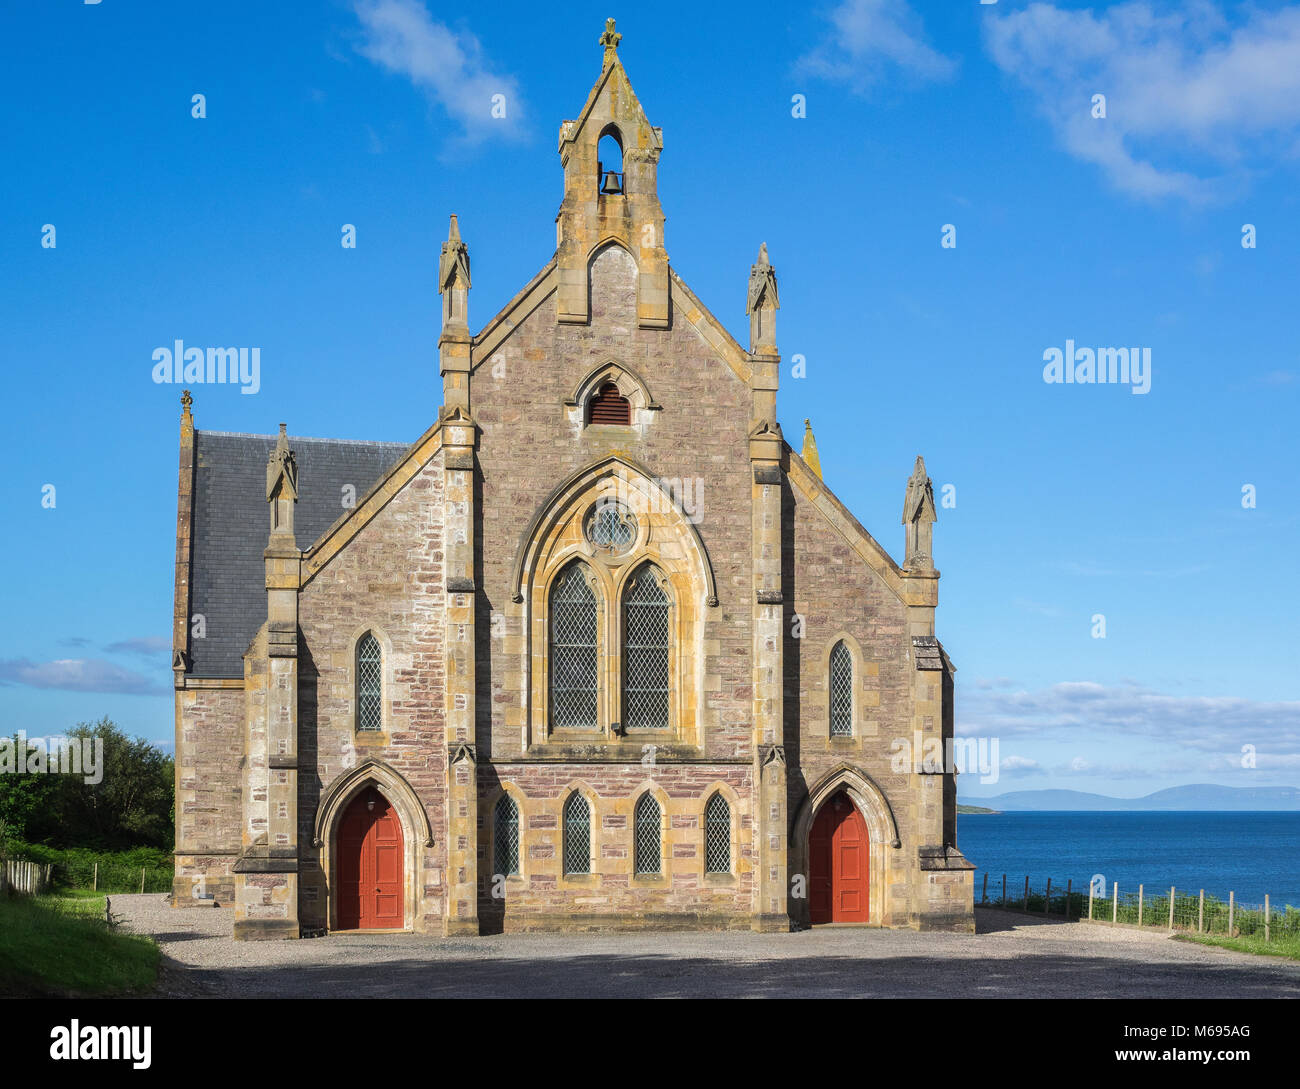 Iglesia libre de escocia fotografías e imágenes de alta resolución - Alamy